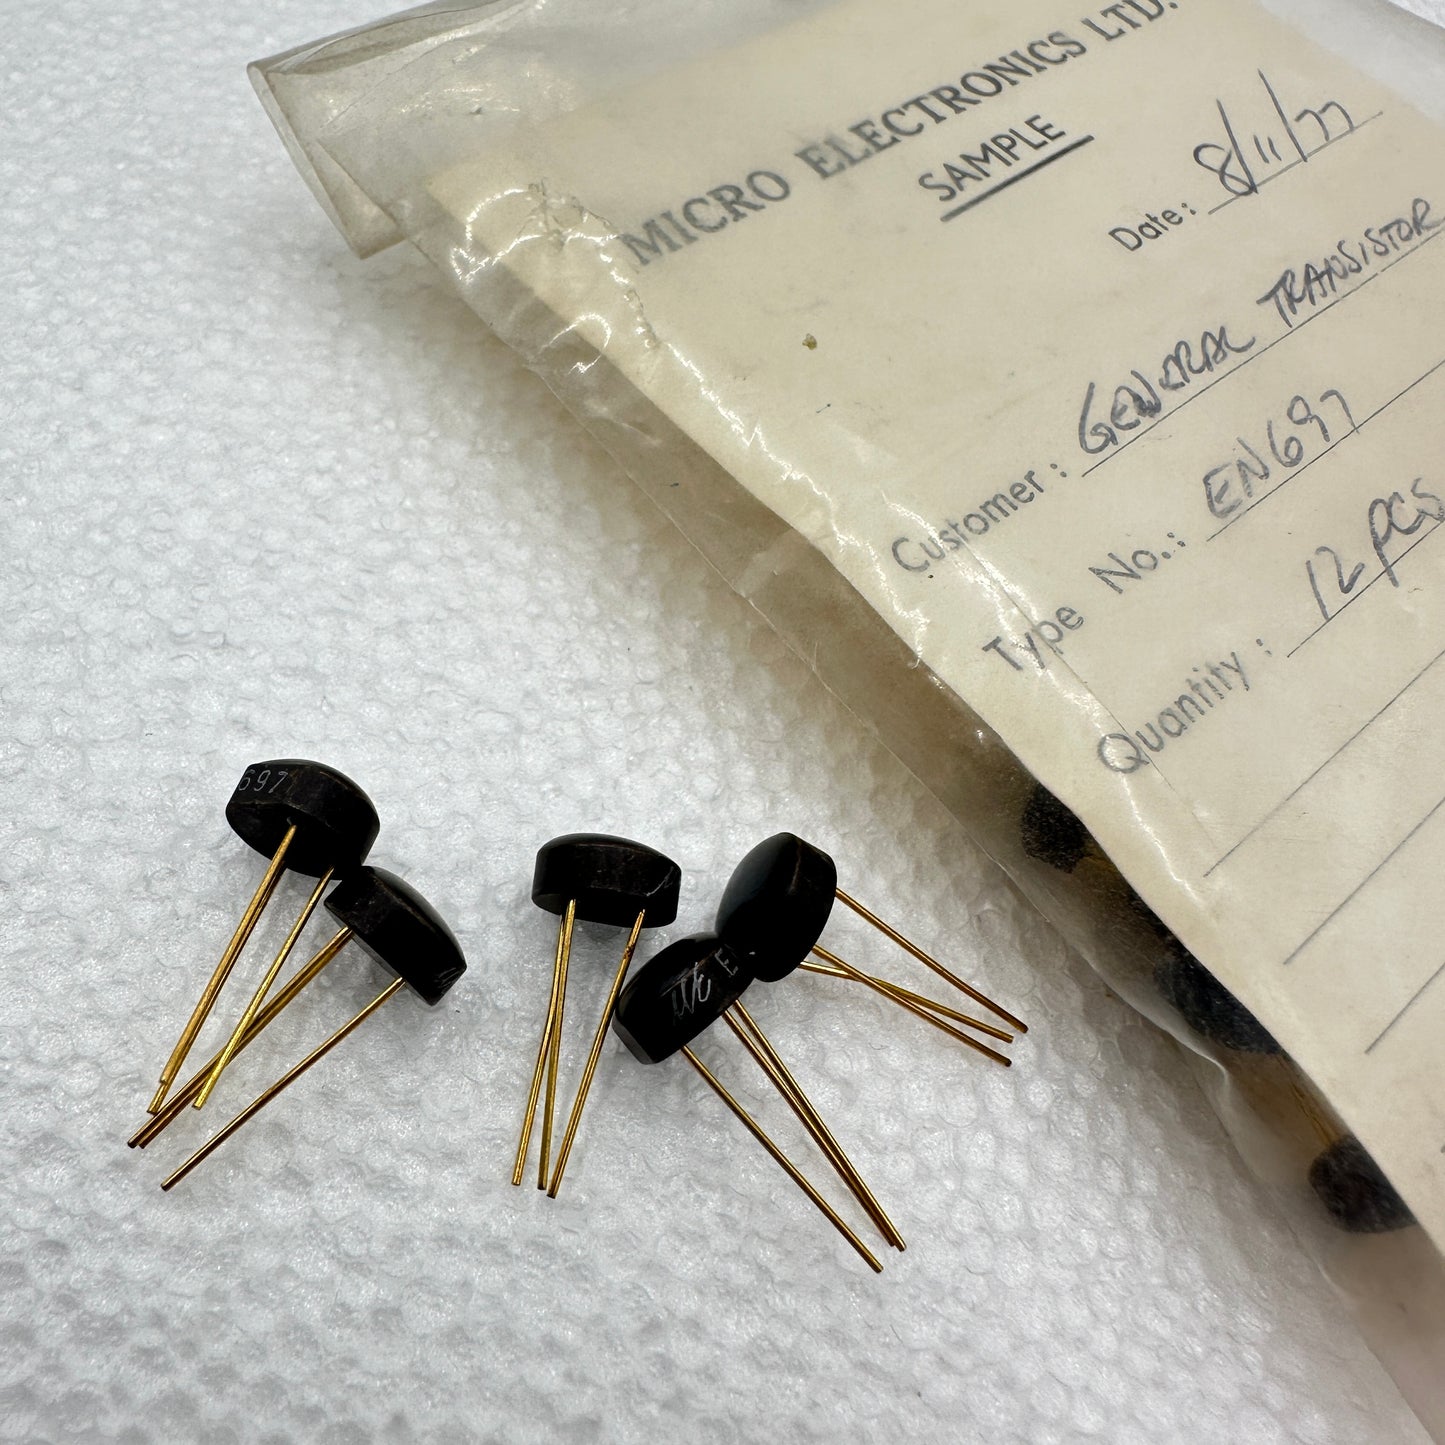 EN697 Silicon Transistor NOS - Rare & Reclaimed